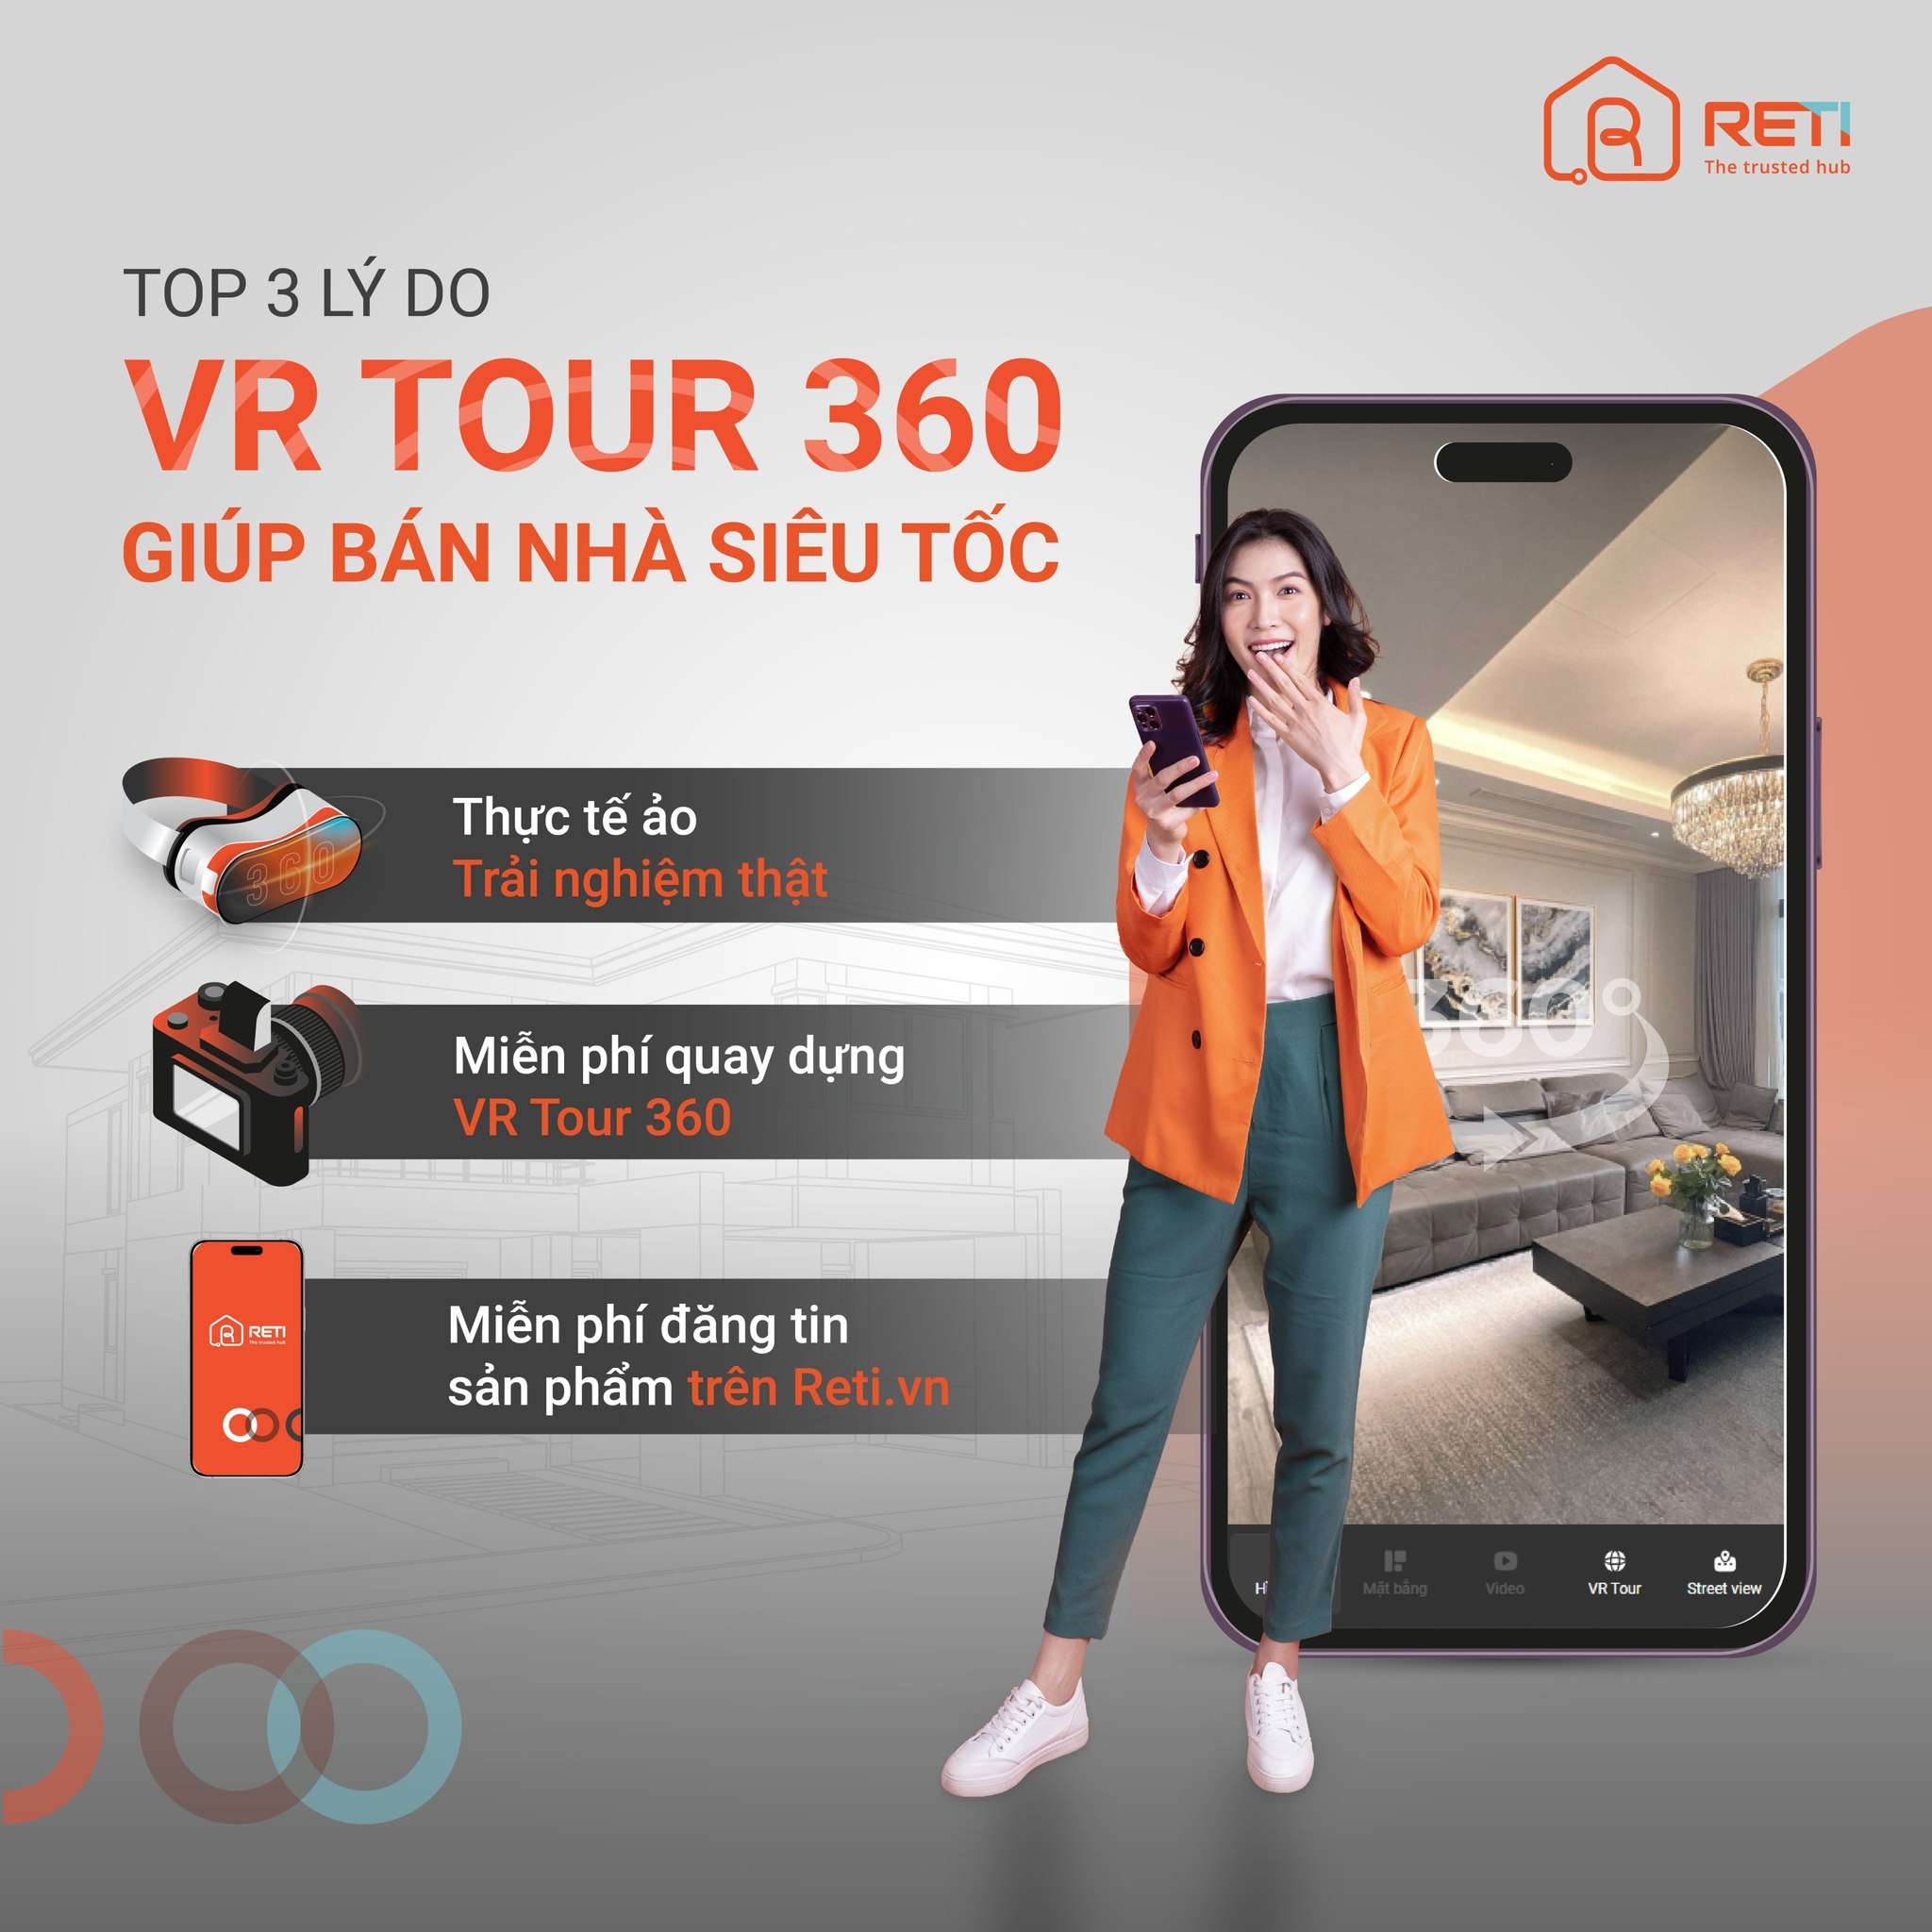 VR 360 bất động sản - Giải pháp giúp bán nhà siêu tốc 1